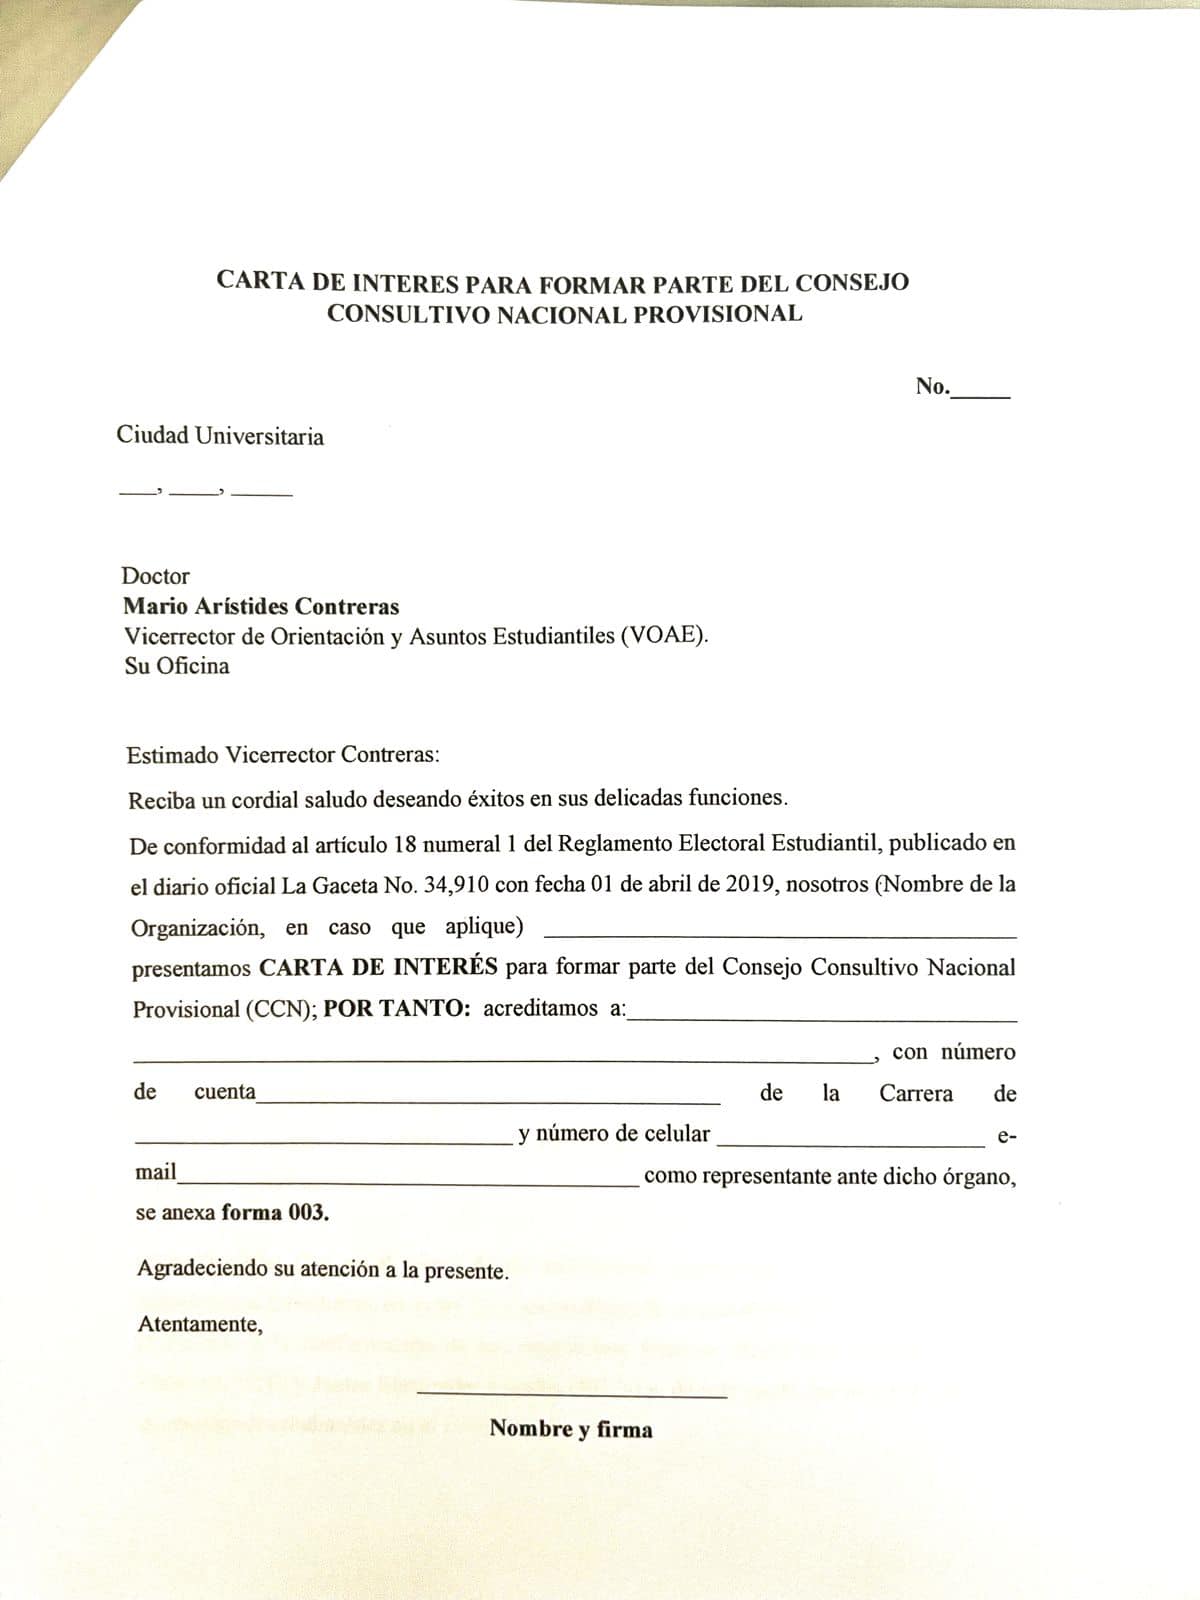 Formato Carta de Interes Conformacion CCNP v2